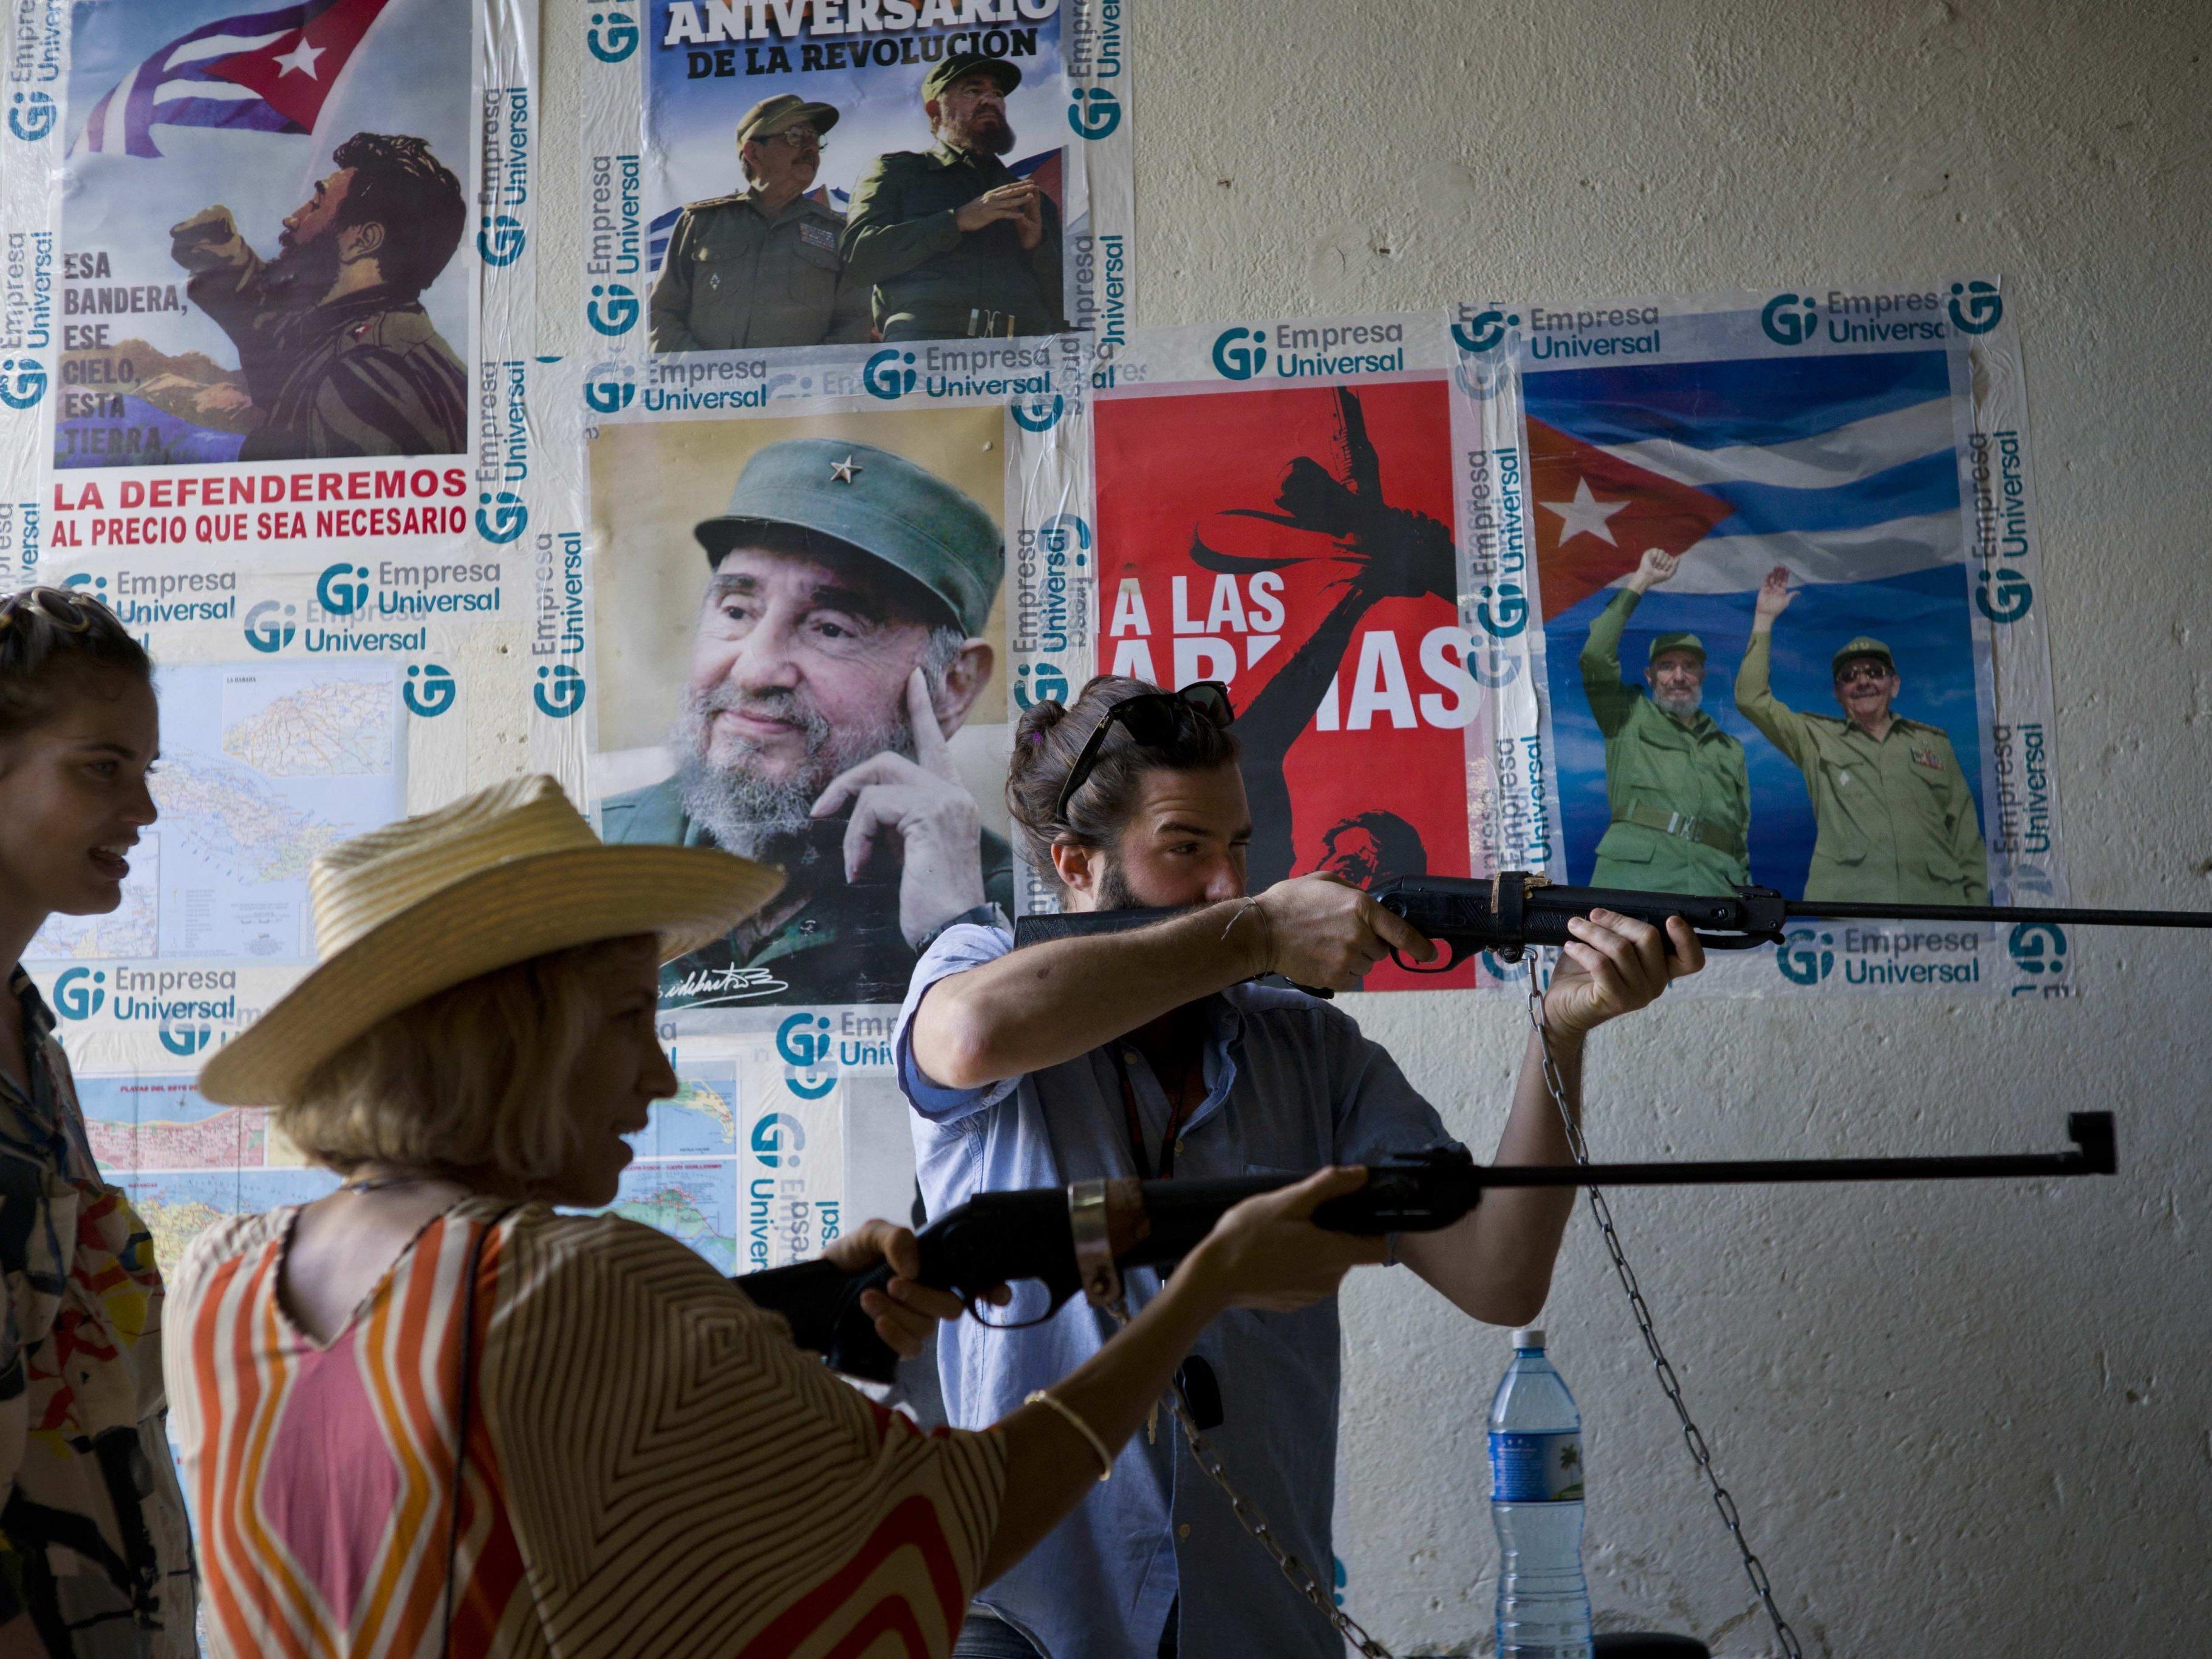 Castro tot. Obama nicht mehr im Amt - Wie geht die Beziehung Kuba - USA weiter?